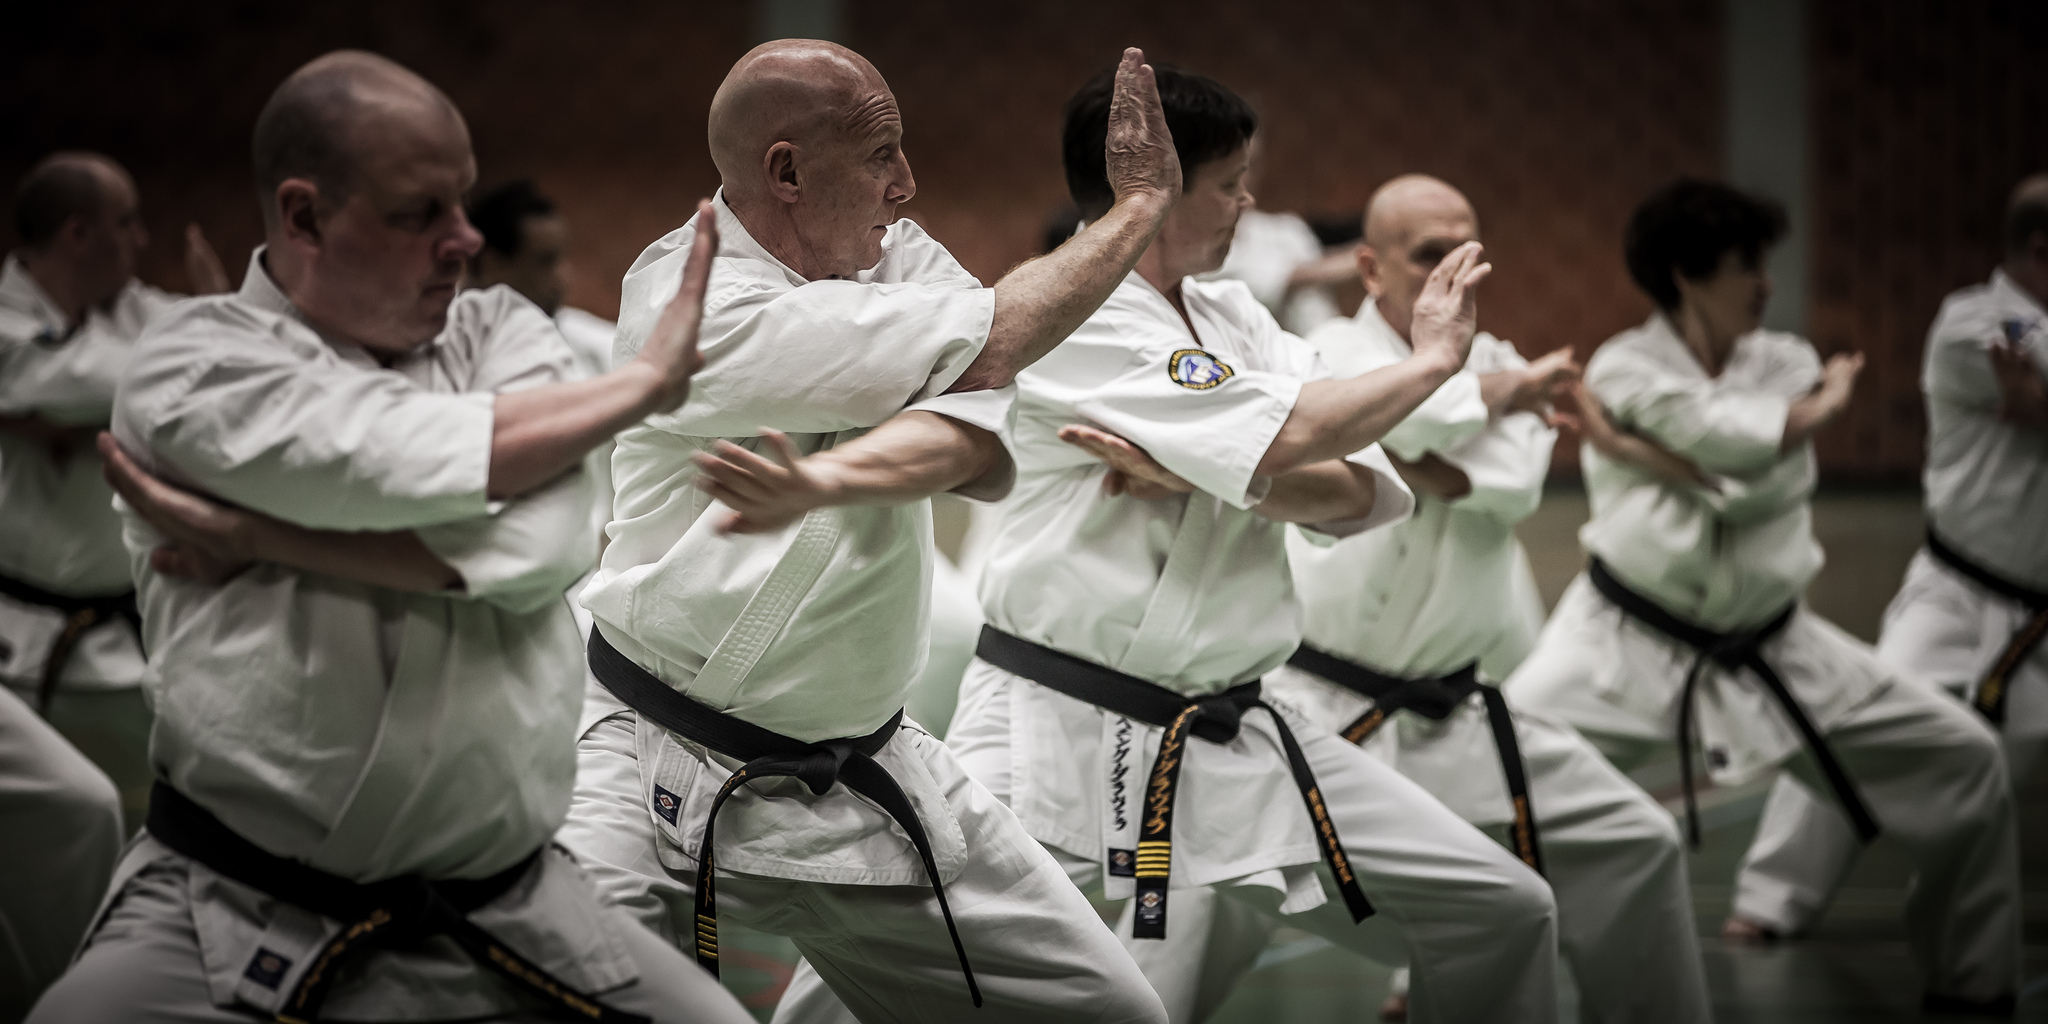 kyokushin karate kata 1 History of kyokushin kata